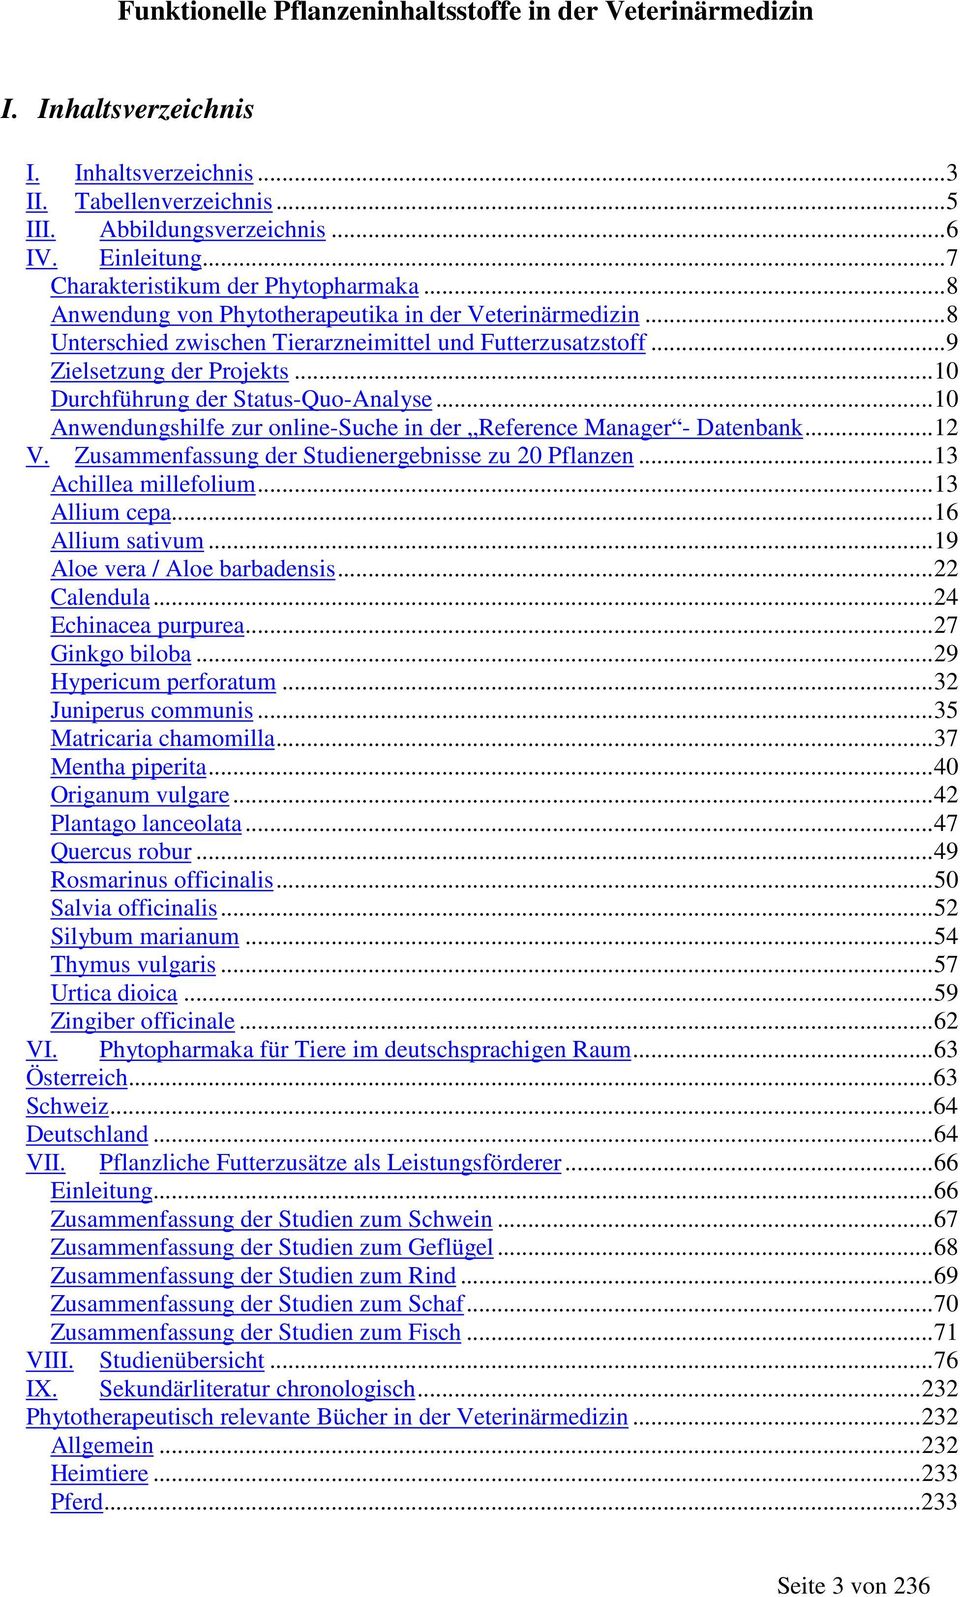 ..10 Anwendungshilfe zur online-suche in der erence Manager - Datenbank...12 V. Zusammenfassung der nergebnisse zu 20 n...13 Achillea millefolium...13 Allium cepa...16 Allium sativum.